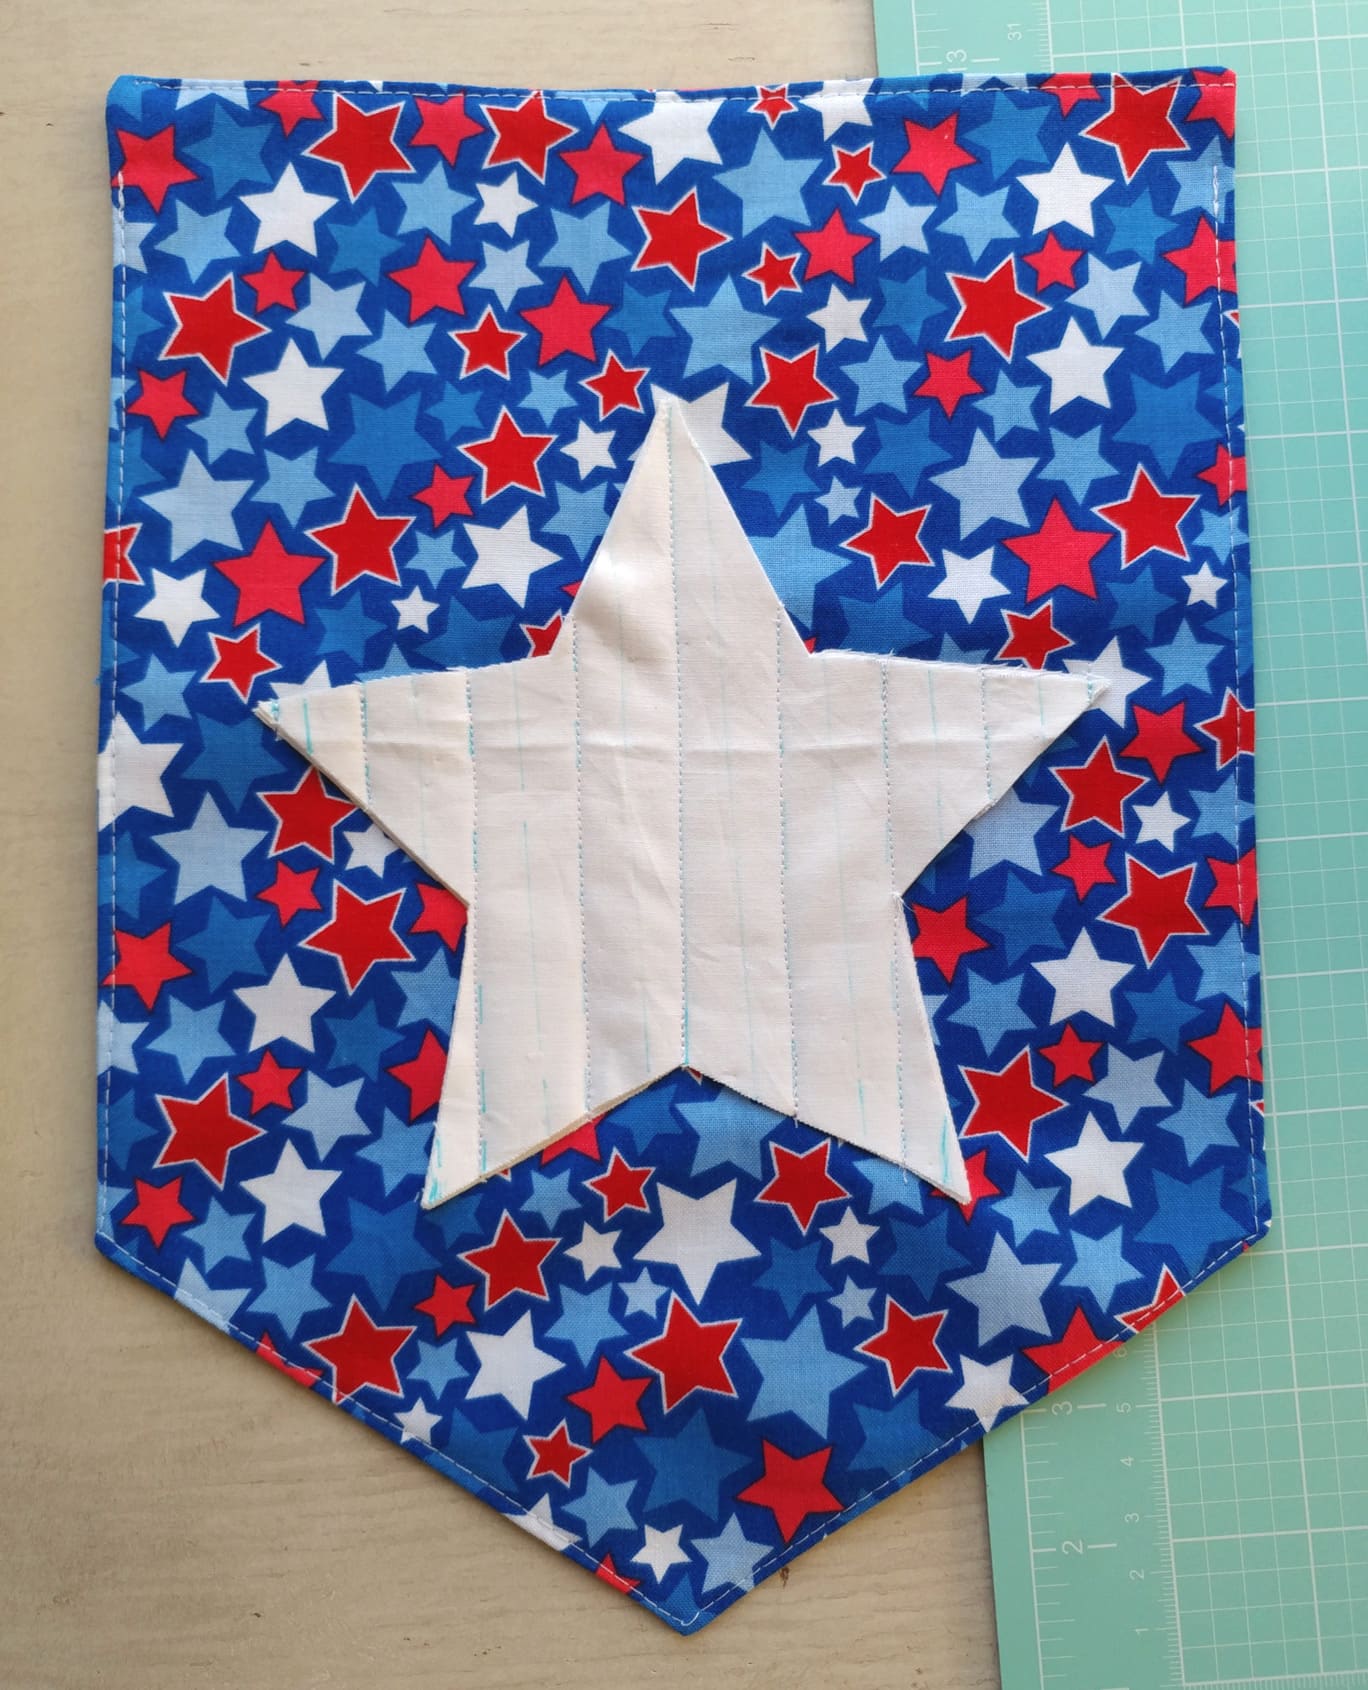 Le didacticiel de couture de bannière étoile chenille, une idée d'artisanat gratuite du 4 juillet, fait une décoration si mignonne du 4 juillet ! #4thofjuly #4thofjulycrafts #4thofjulysewing #smallsewingproject